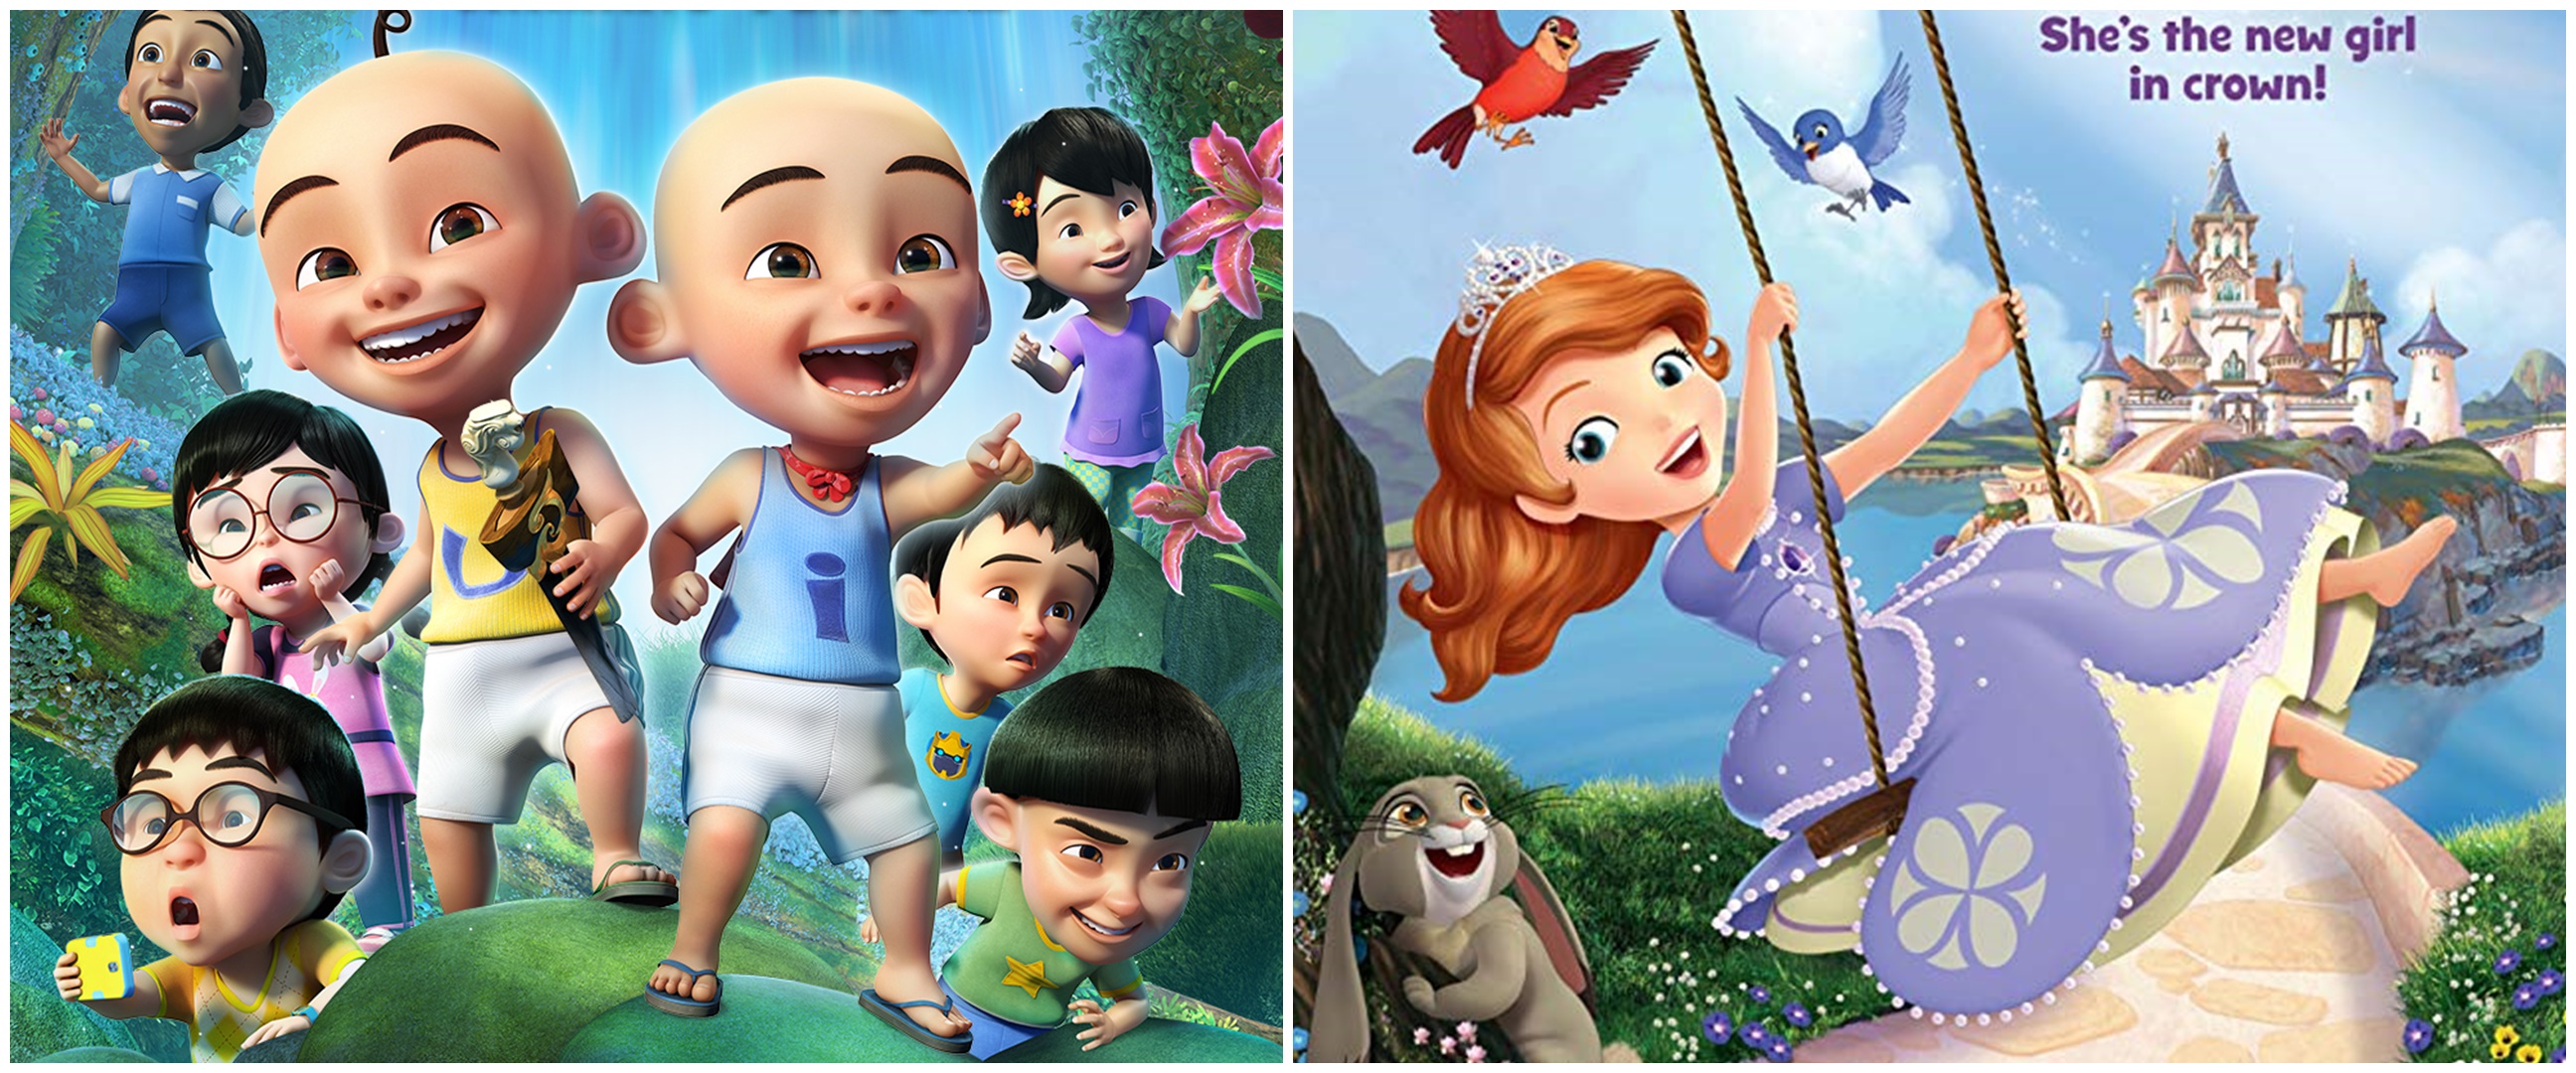 10 Film kartun yang baik untuk anak, mendidik dan inspiratif